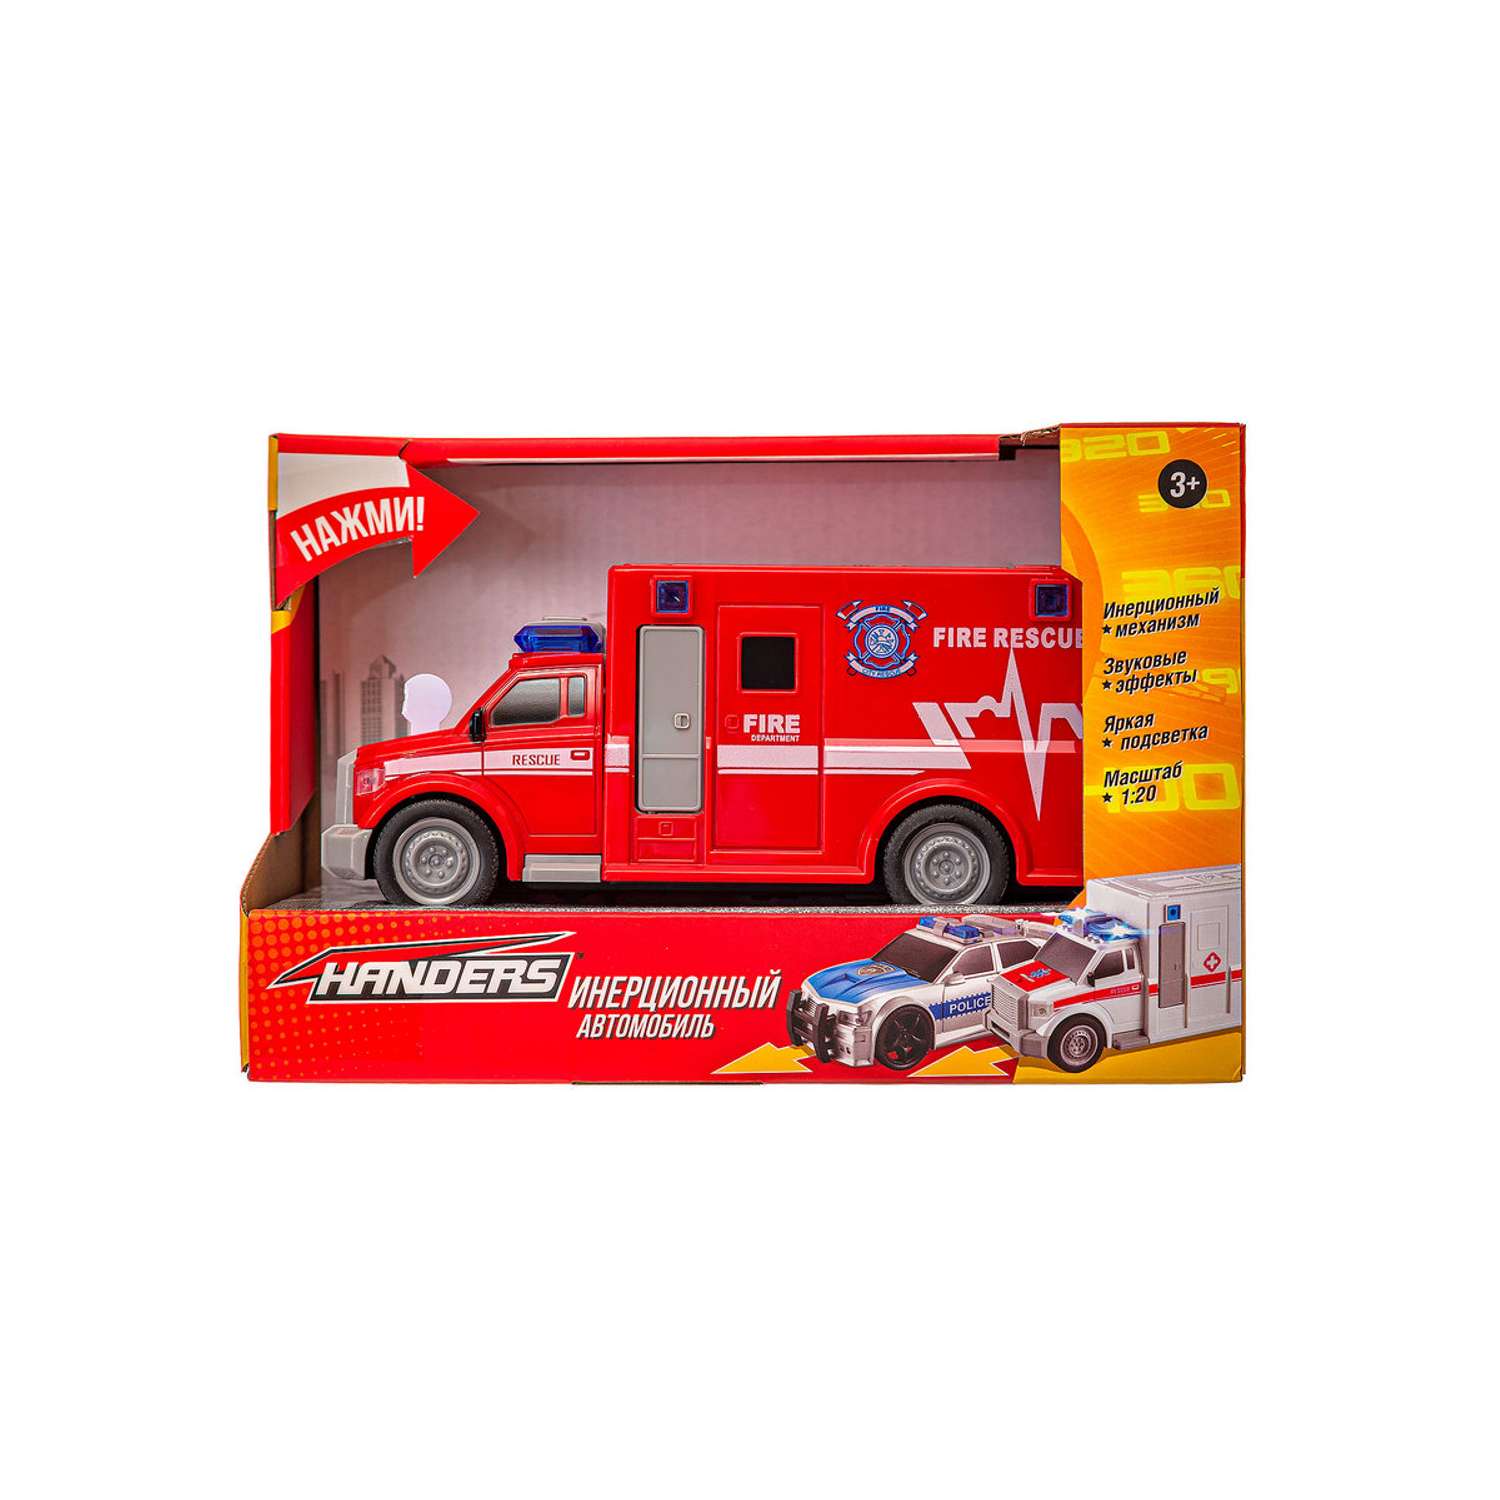 Инерционная игрушка Handers Пожарный фургон 19 см 1:20 свет звук HAC1608-145 - фото 3